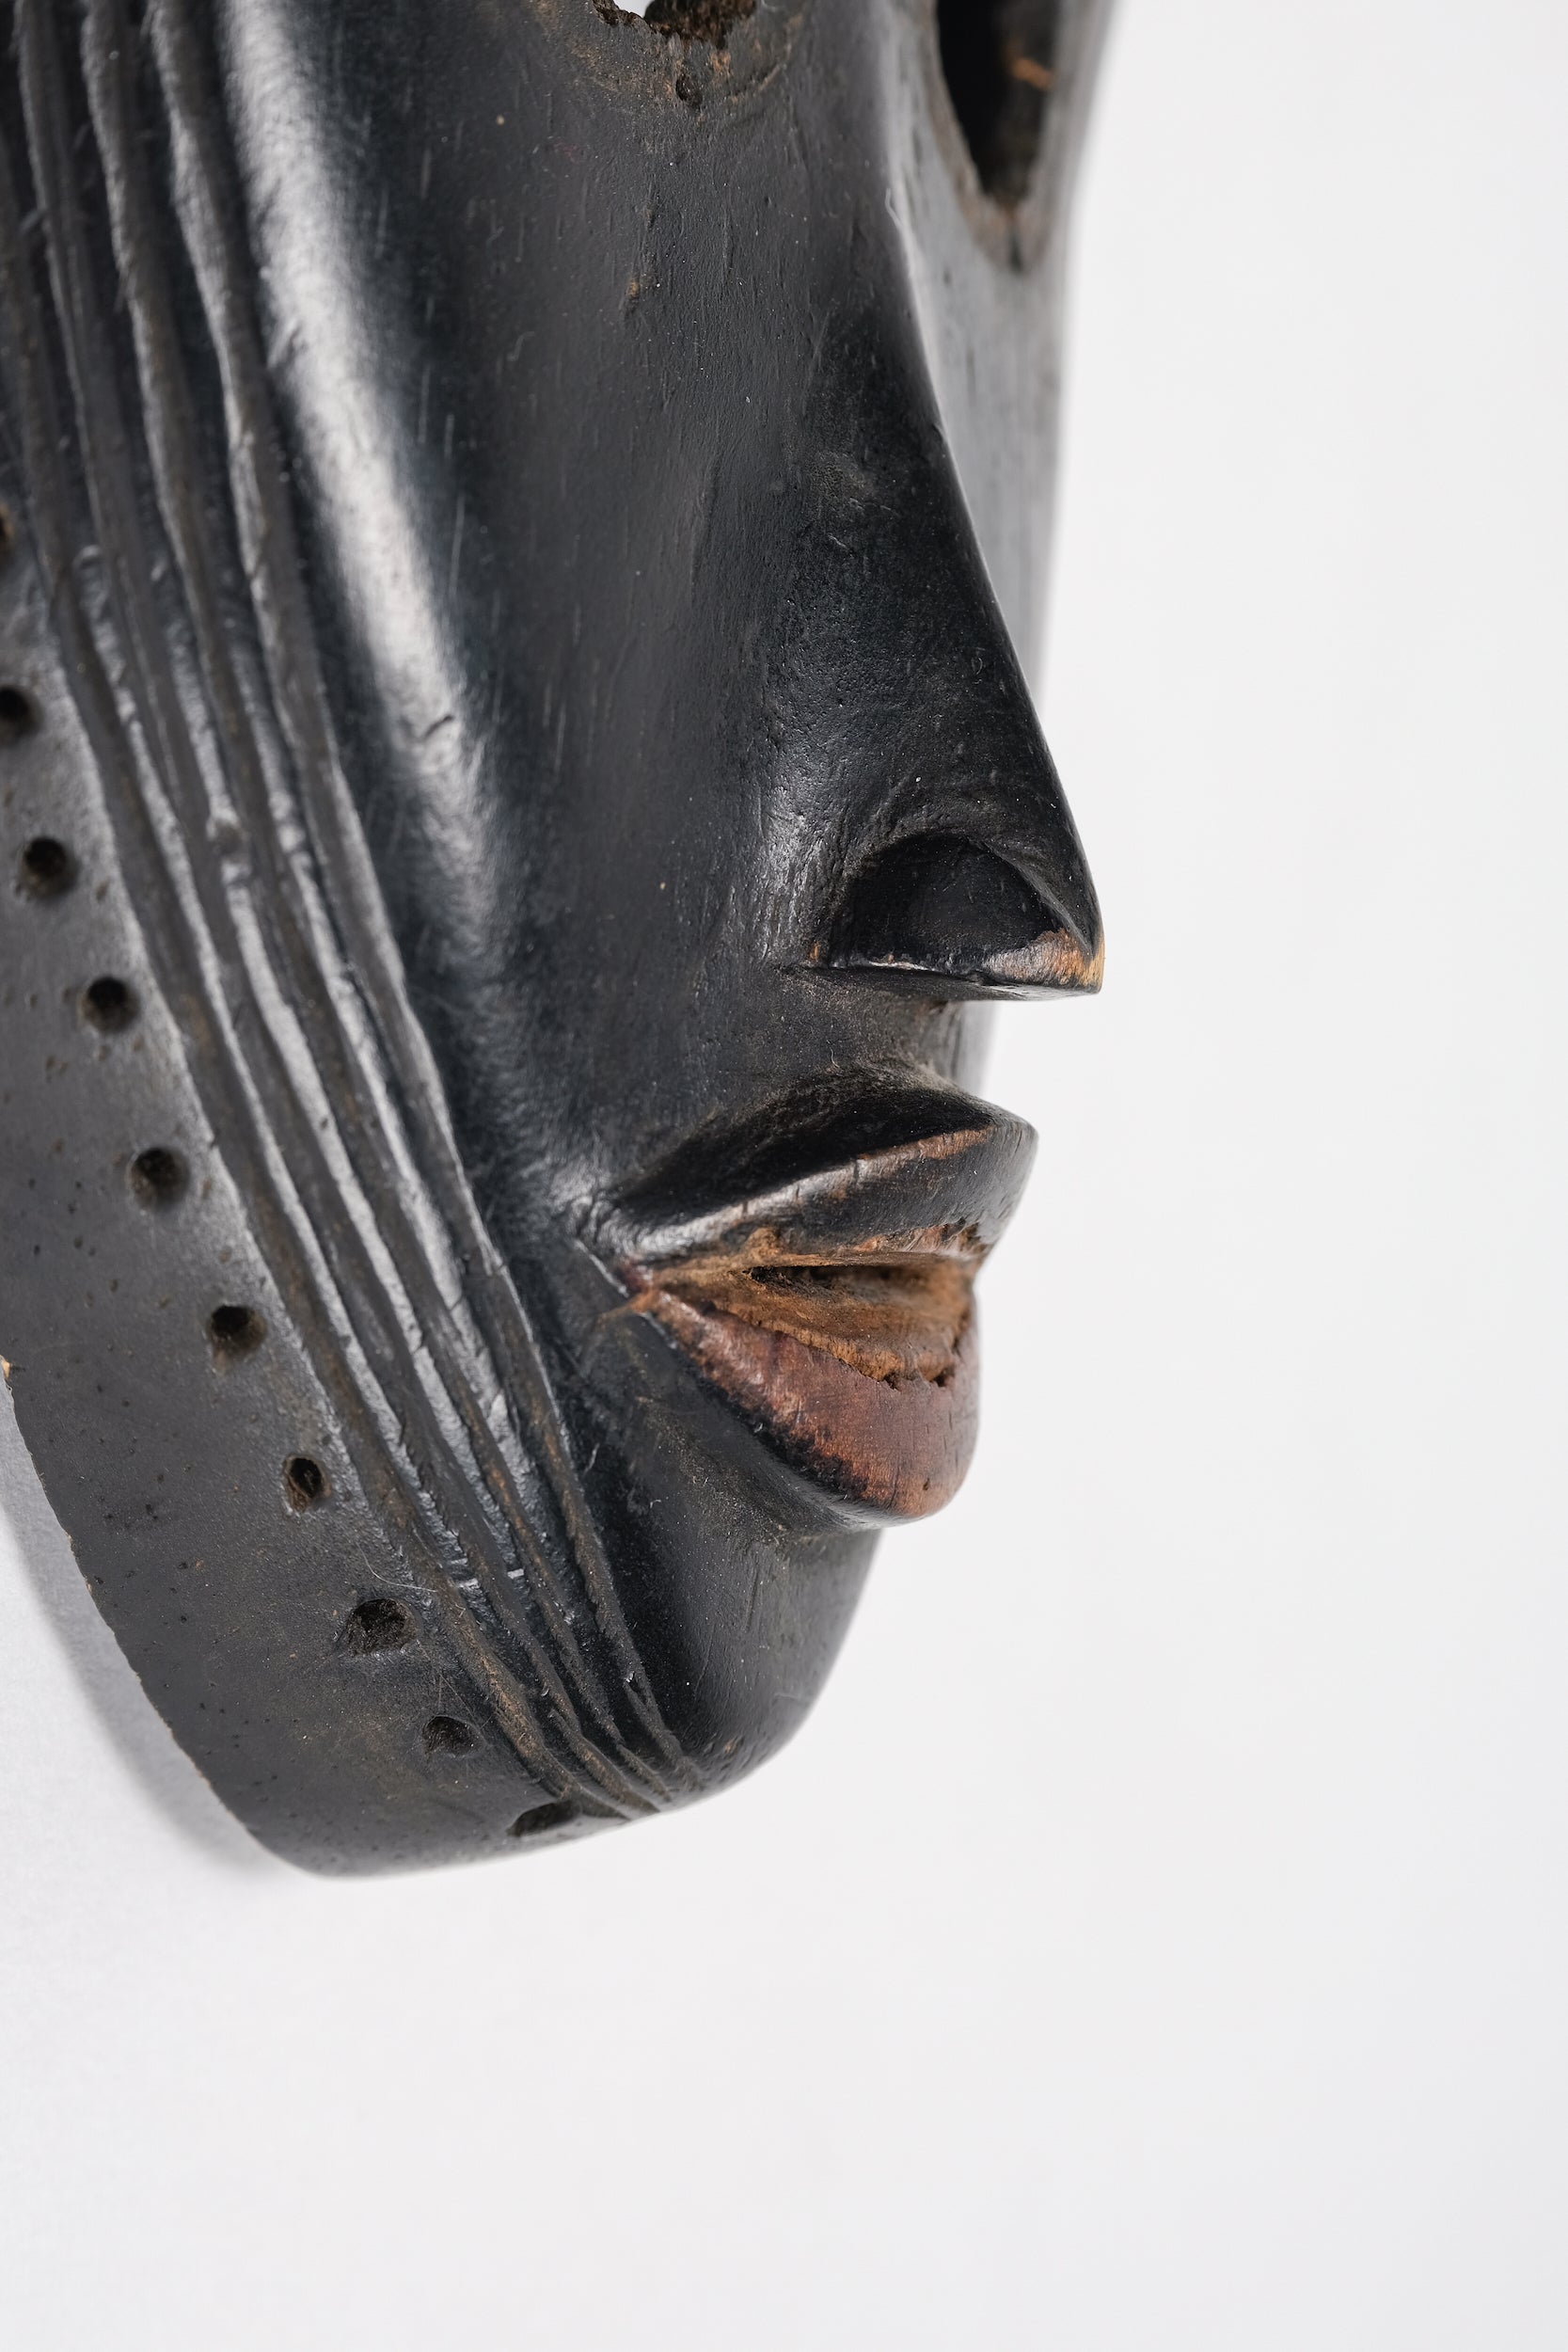 Maske, Dan Yacouba, Westafrika, 30er